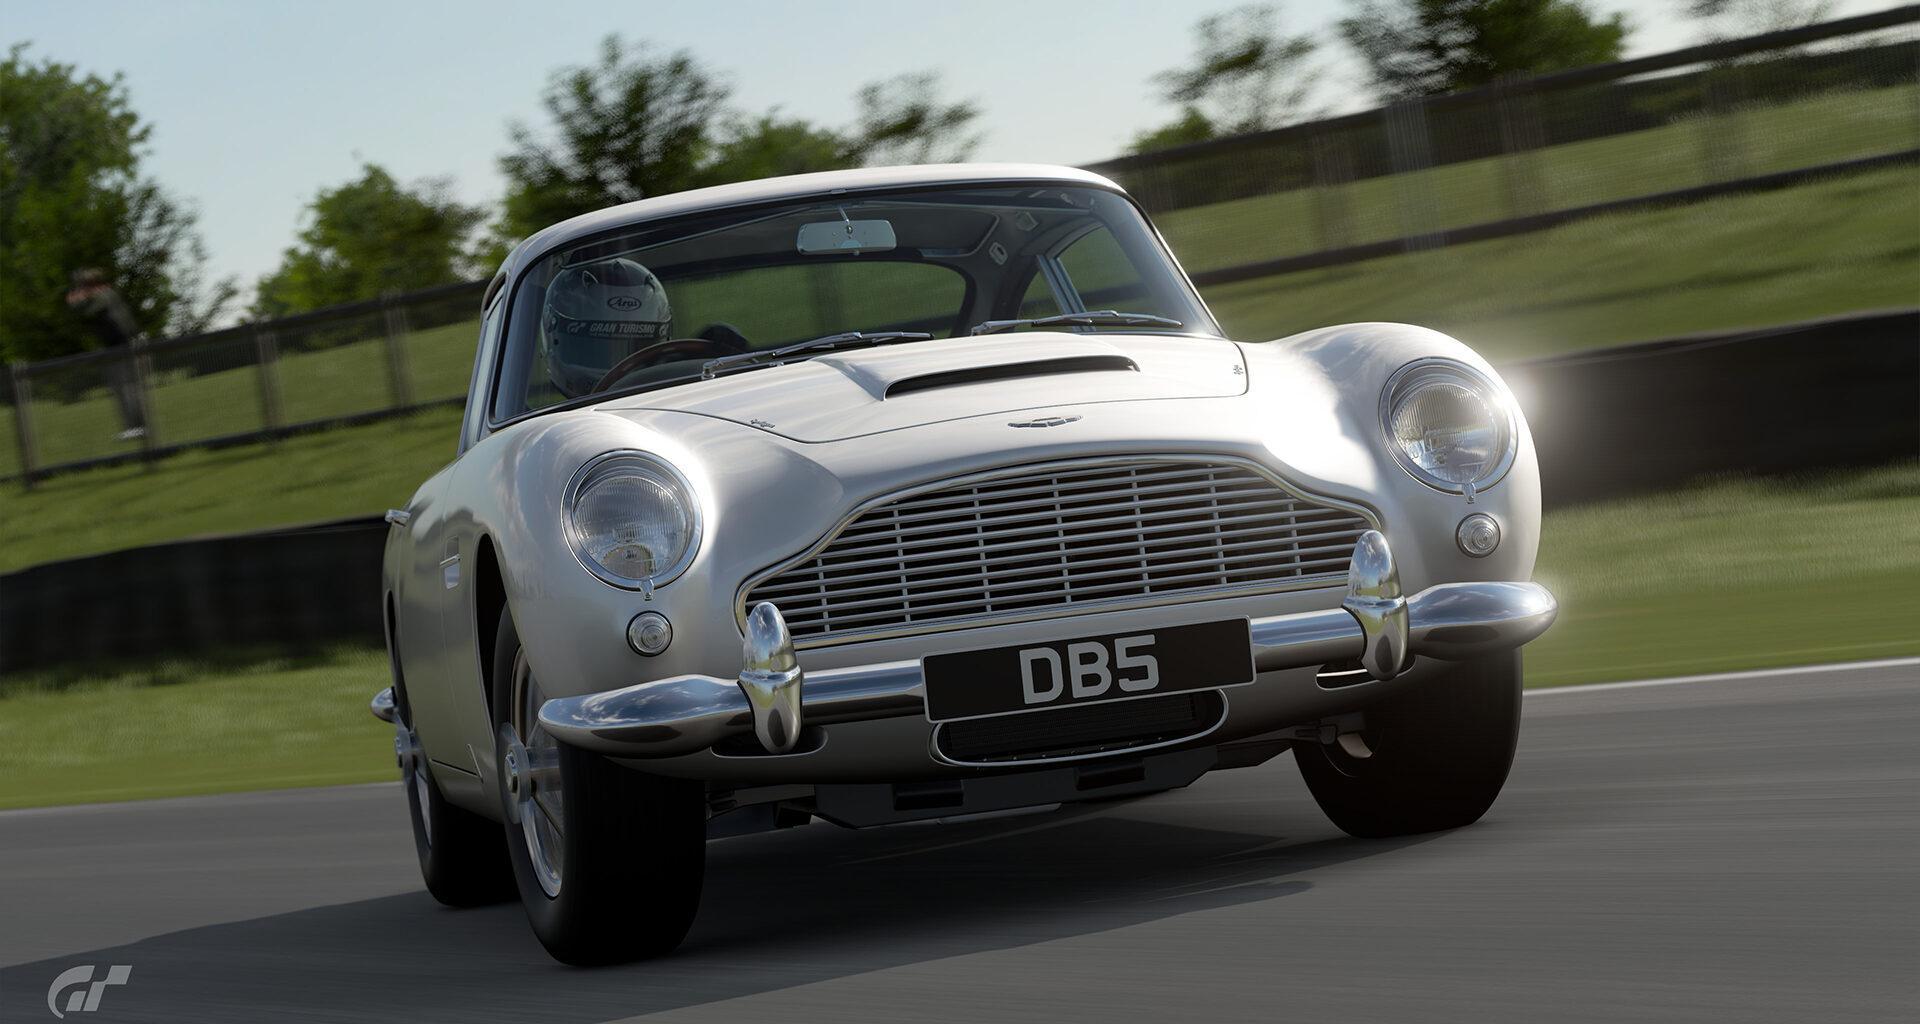 Aston Martin DB5, Goodwood Motor Circuit, Gran Turismo 7, Lap Time Challenge